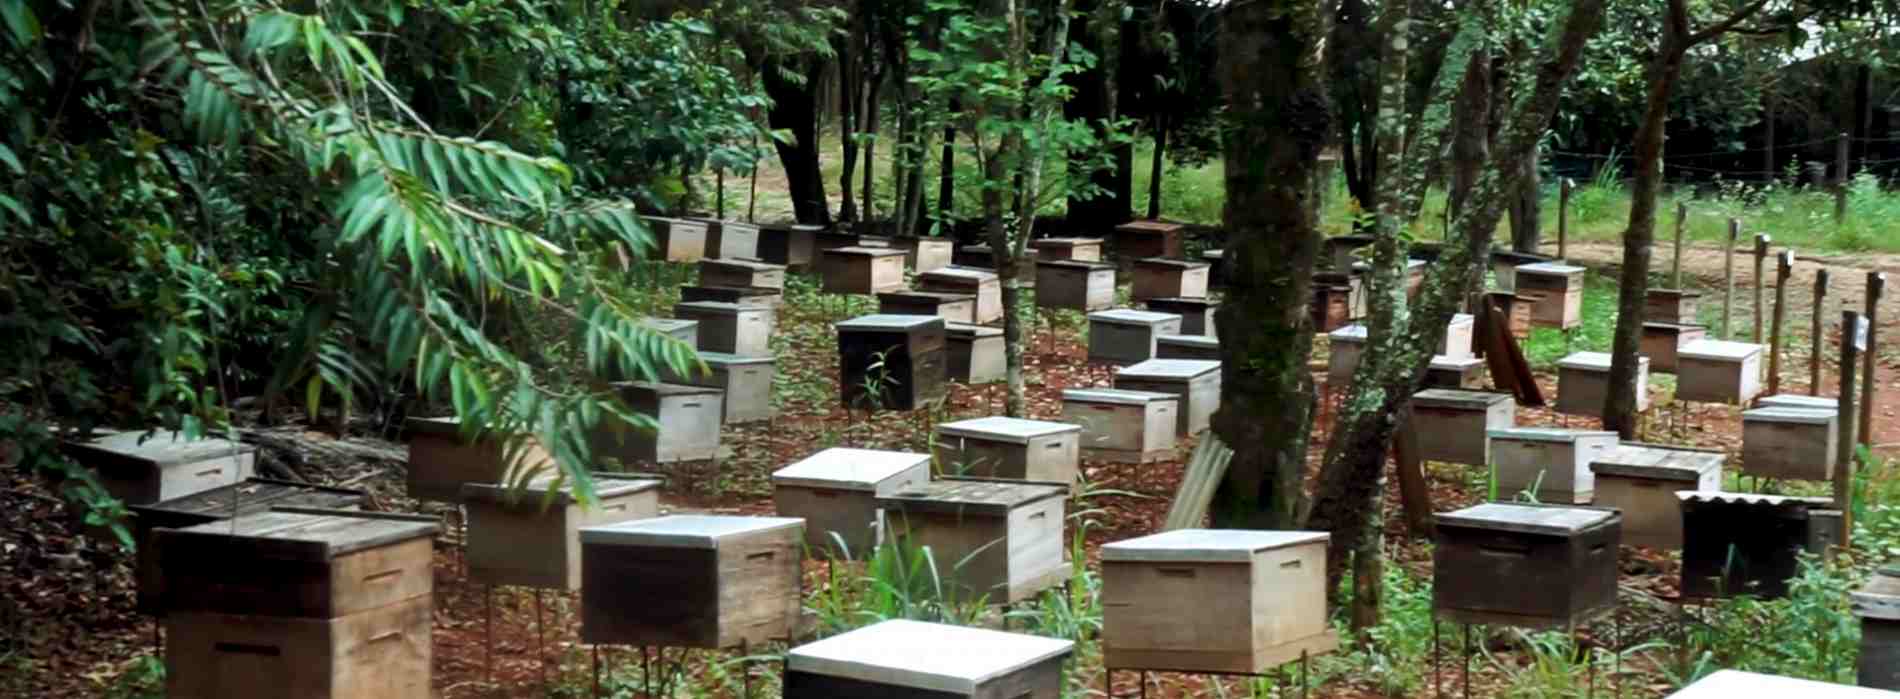 養蜂場の蜂巣箱